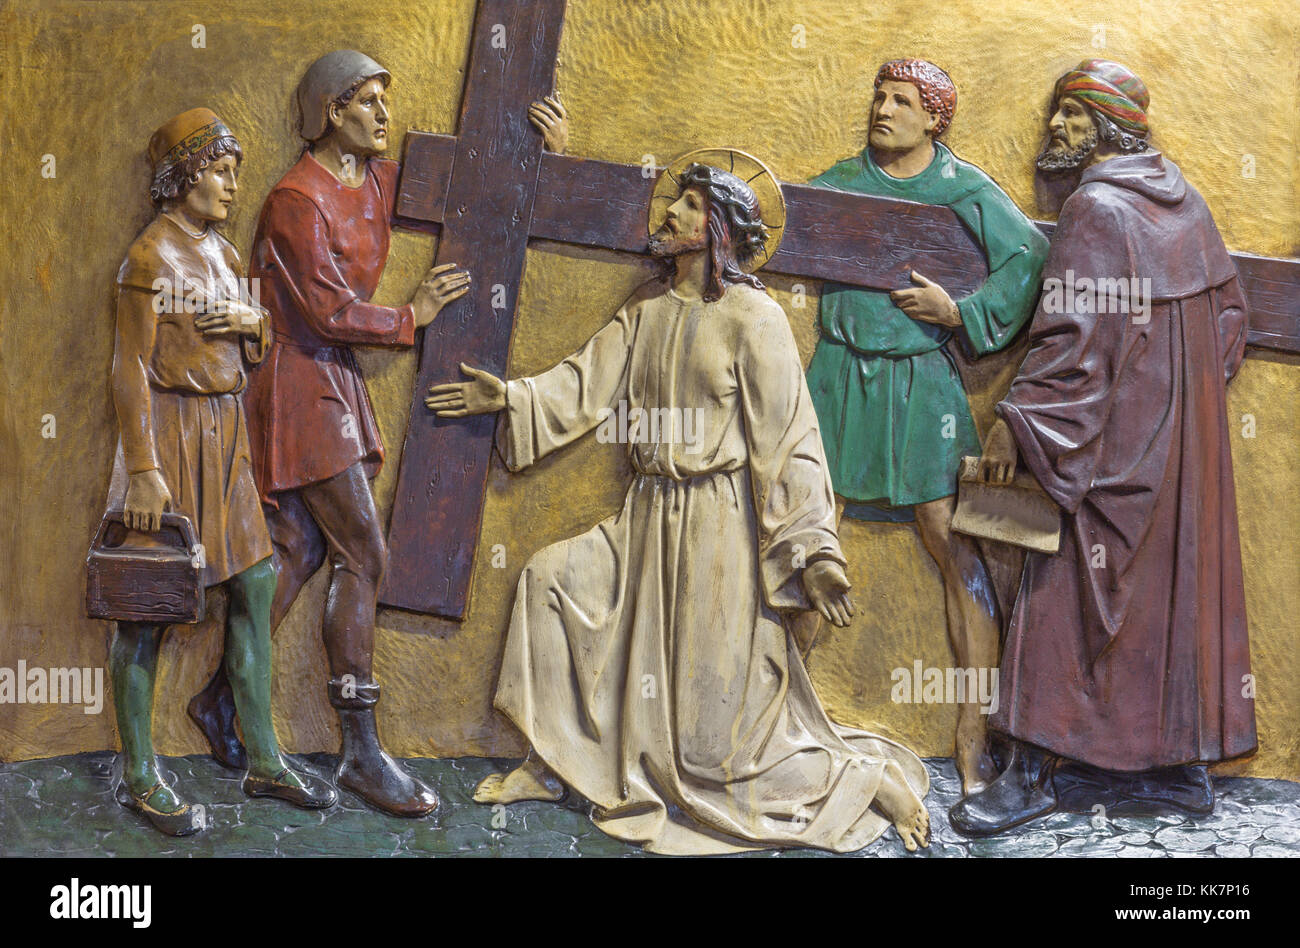 Londra, Gran Bretagna - 17 settembre 2017: il rilievo Gesù porta la croce nella chiesa st. marys pimlico dalla artisto sconosciuto da iniziare a 20 cent. Foto Stock